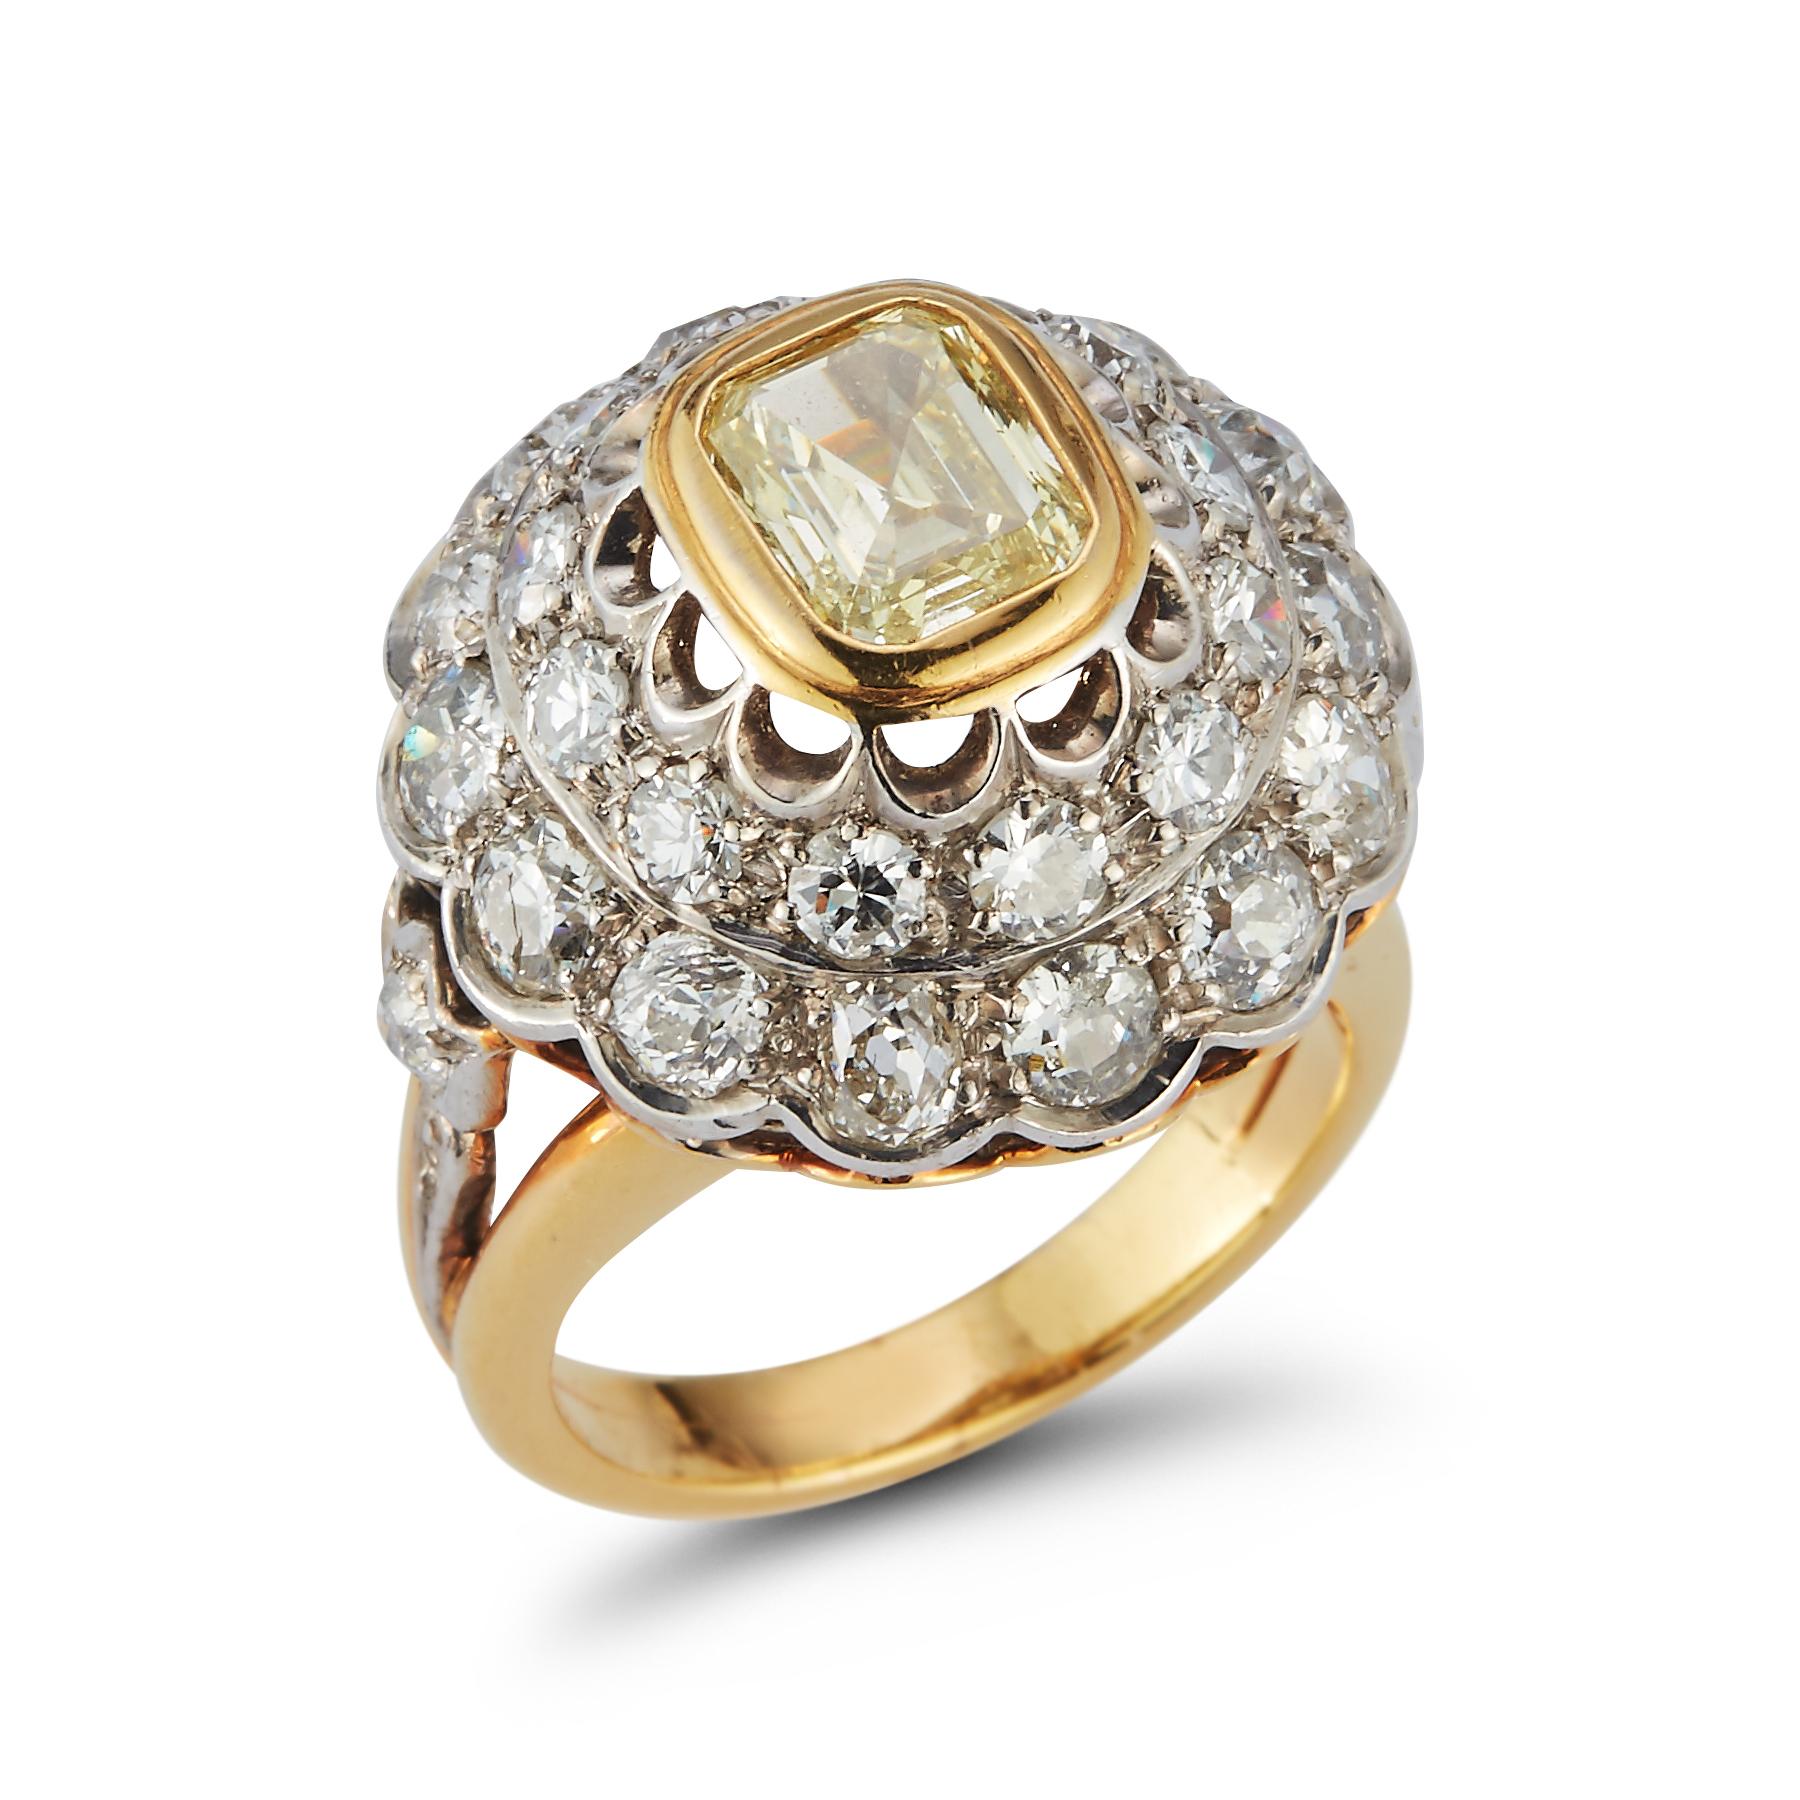 Ausgefallenes Licht  Gelber Ring mit Smaragdschliff und Diamant

Smaragdschliff Gewicht: ca  1.41 ct 

Gewicht der Diamanten:  etwa 2,78 ct 

Ringgröße: 6.25

Re sizable free of charge 

Gold-Typ: 18K Gelbgold 
